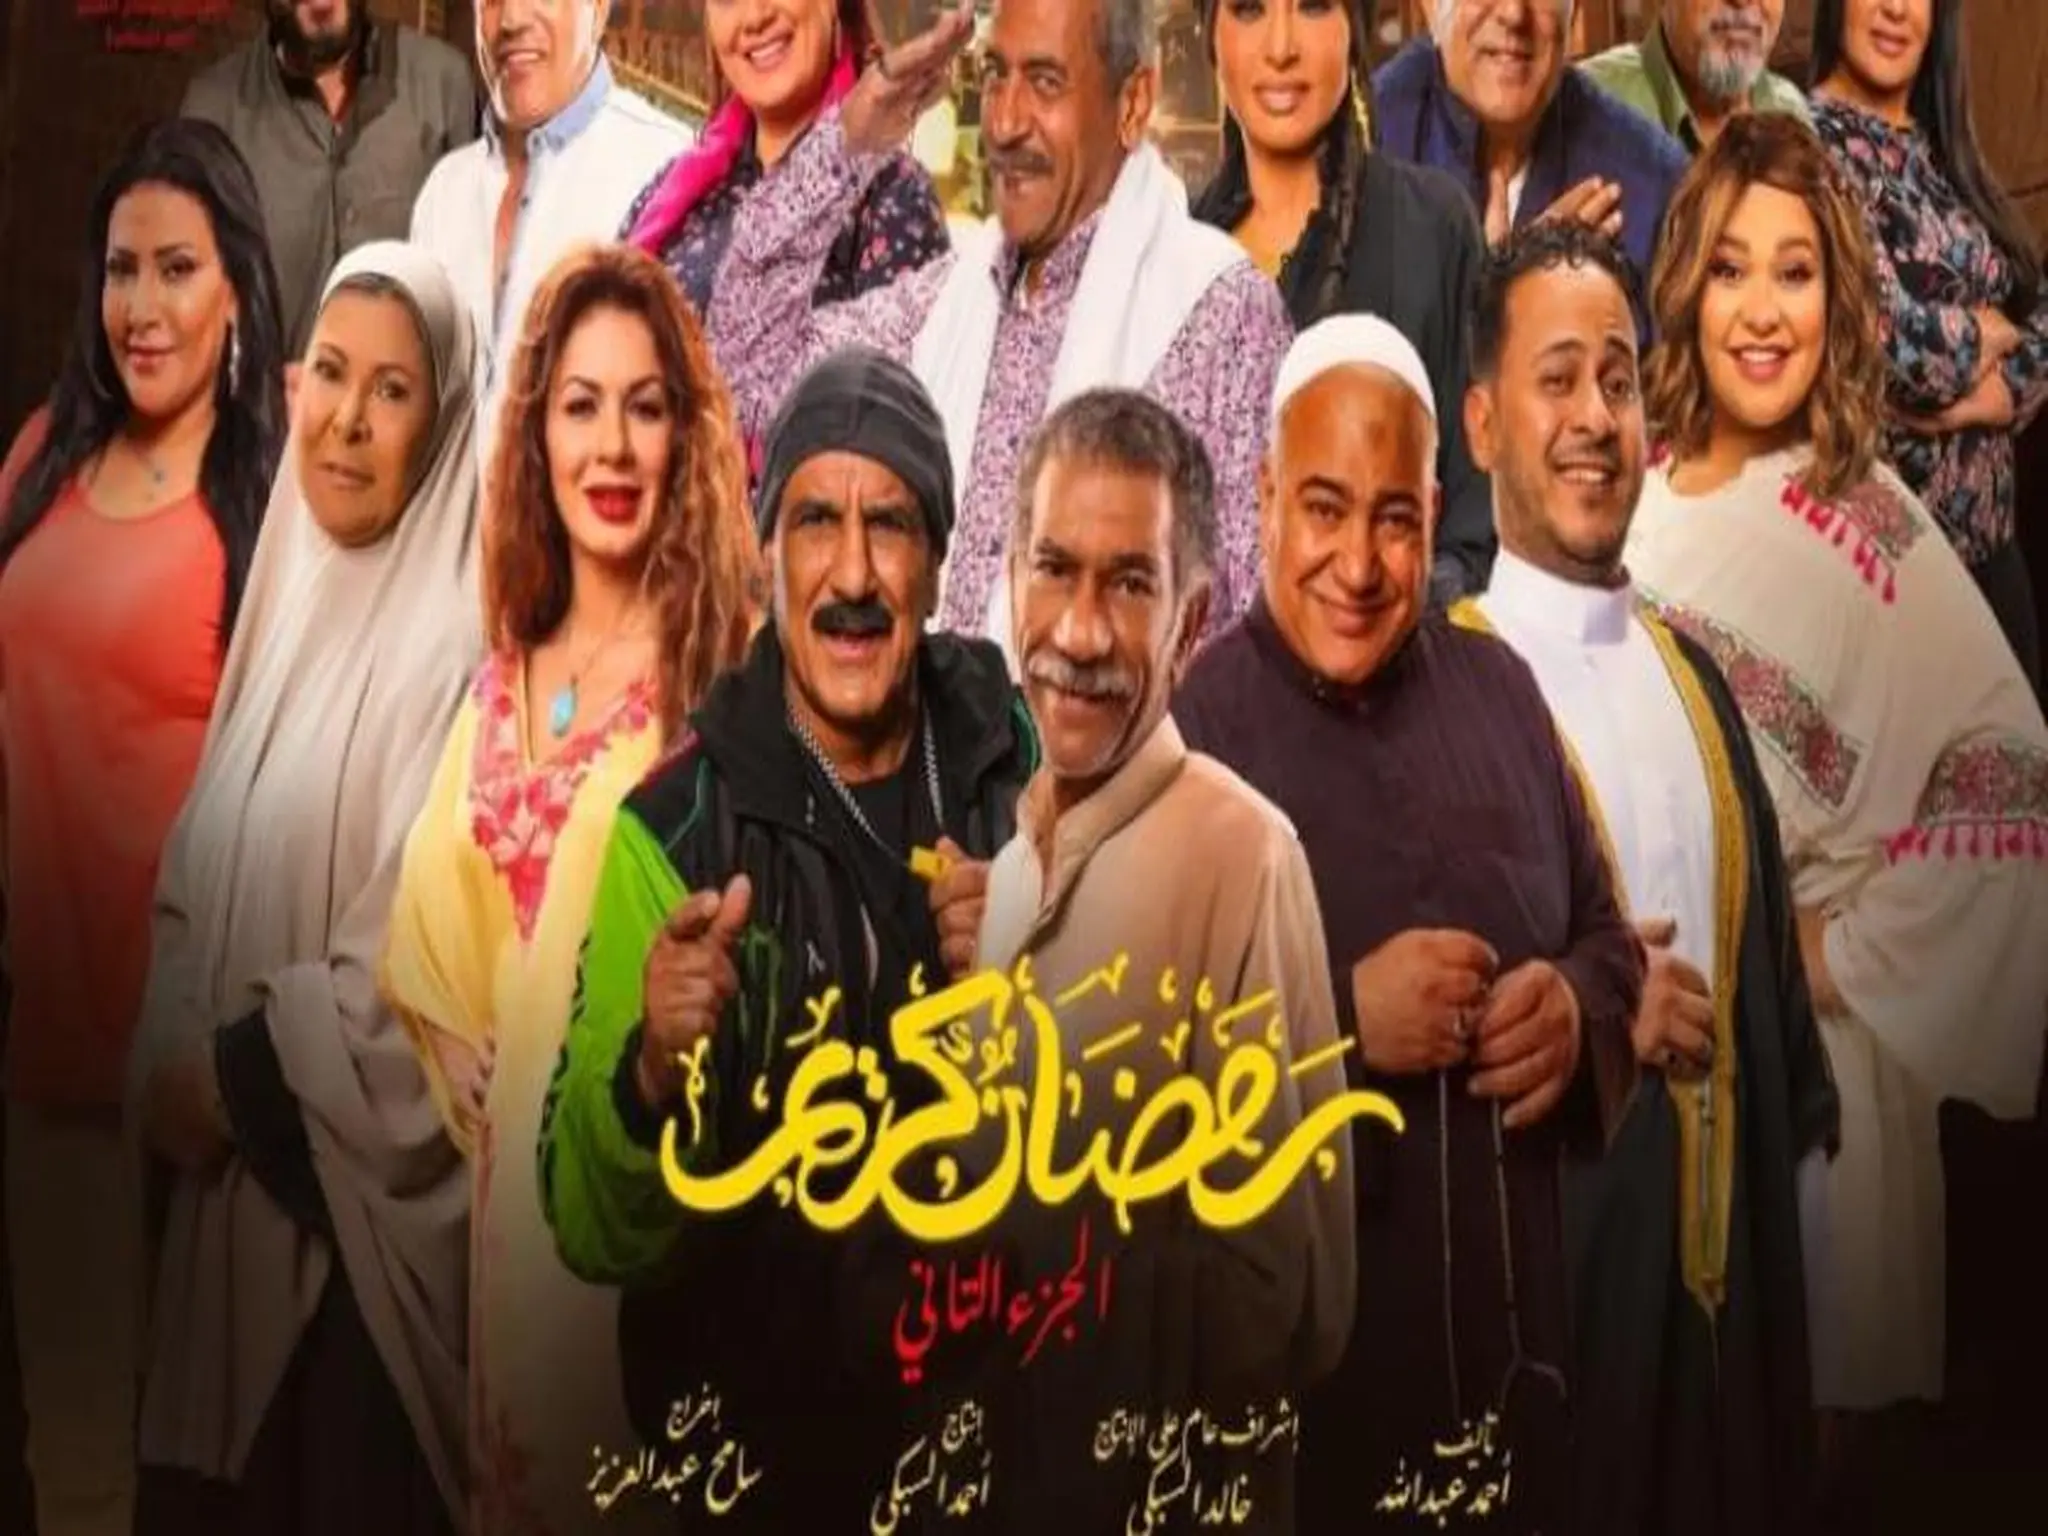 موعد عرض مسلسل رمضان كريم 2 الجزء الثاني وتردد قناة النهار علي النايل سات